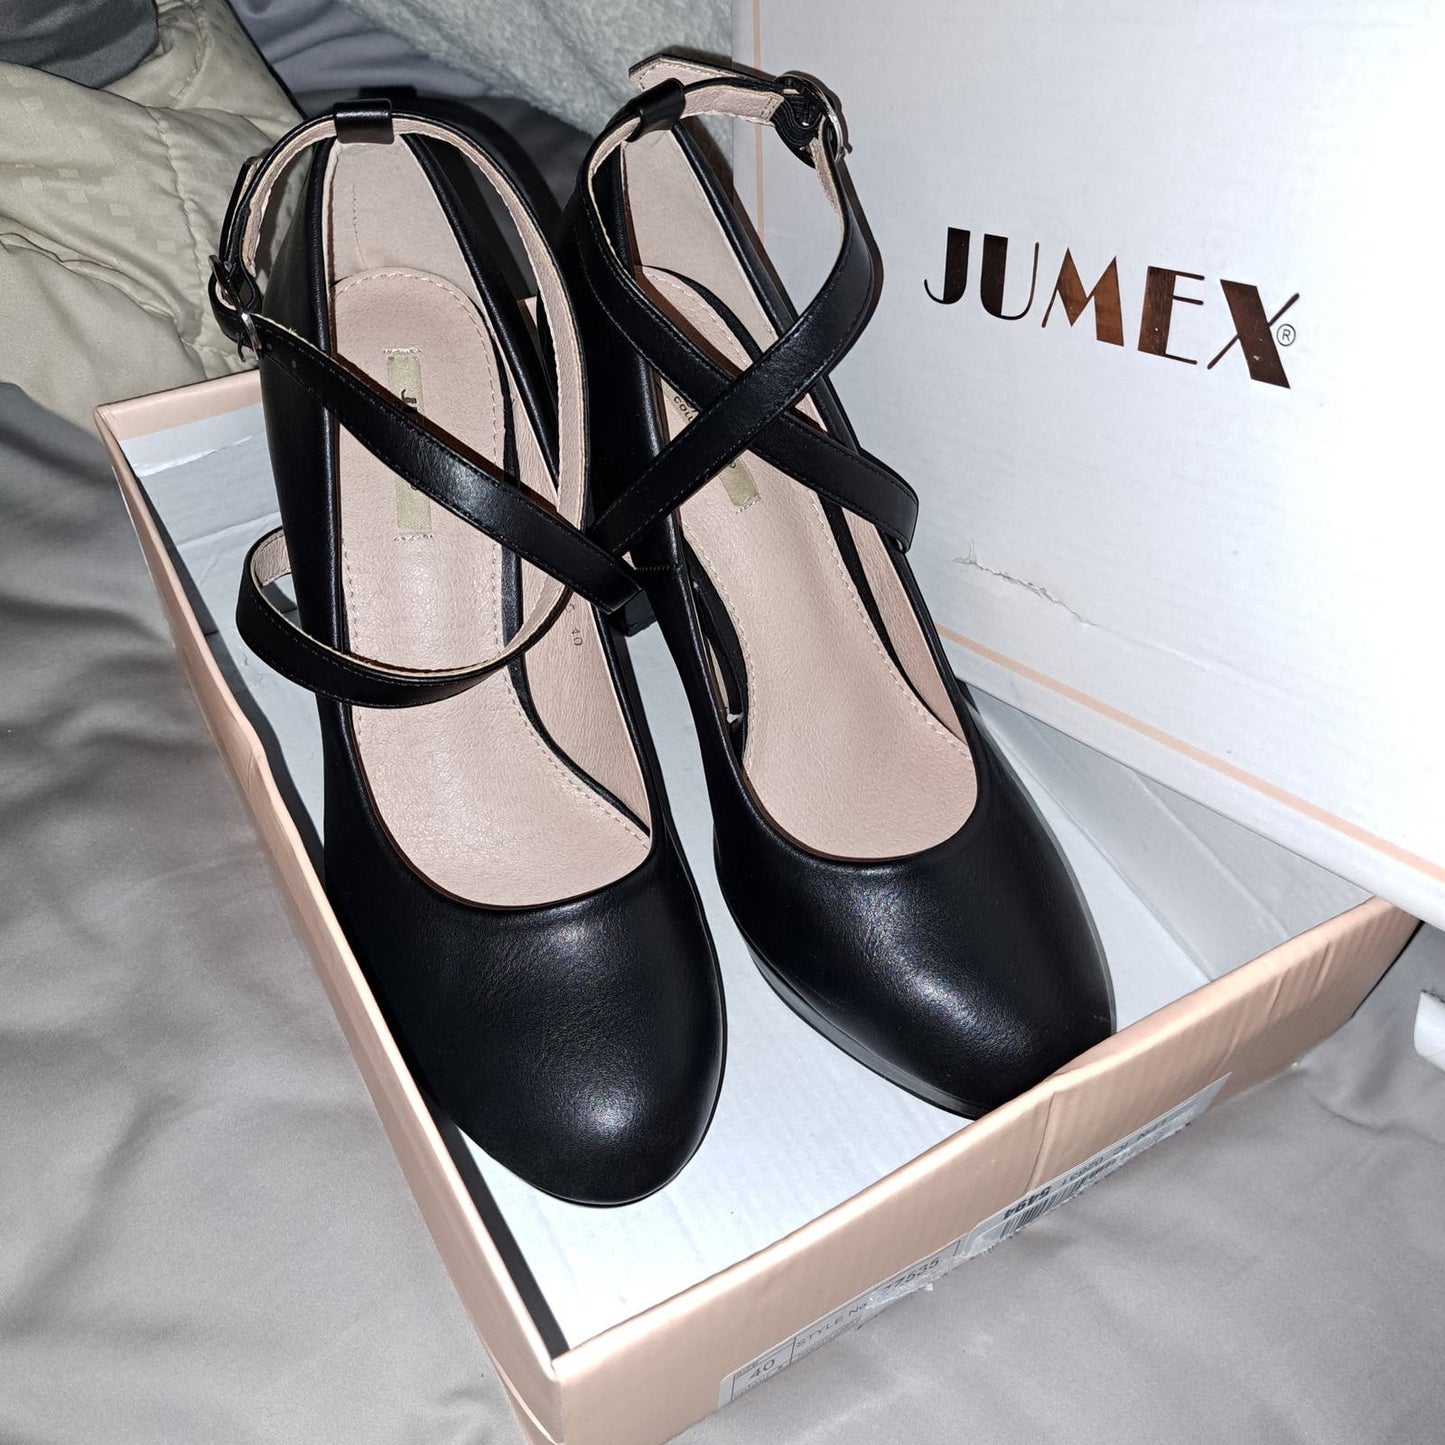 Copied - NIB JUMEX Women's Vintage Strappy Heels Black-40 EU / 8.5 US